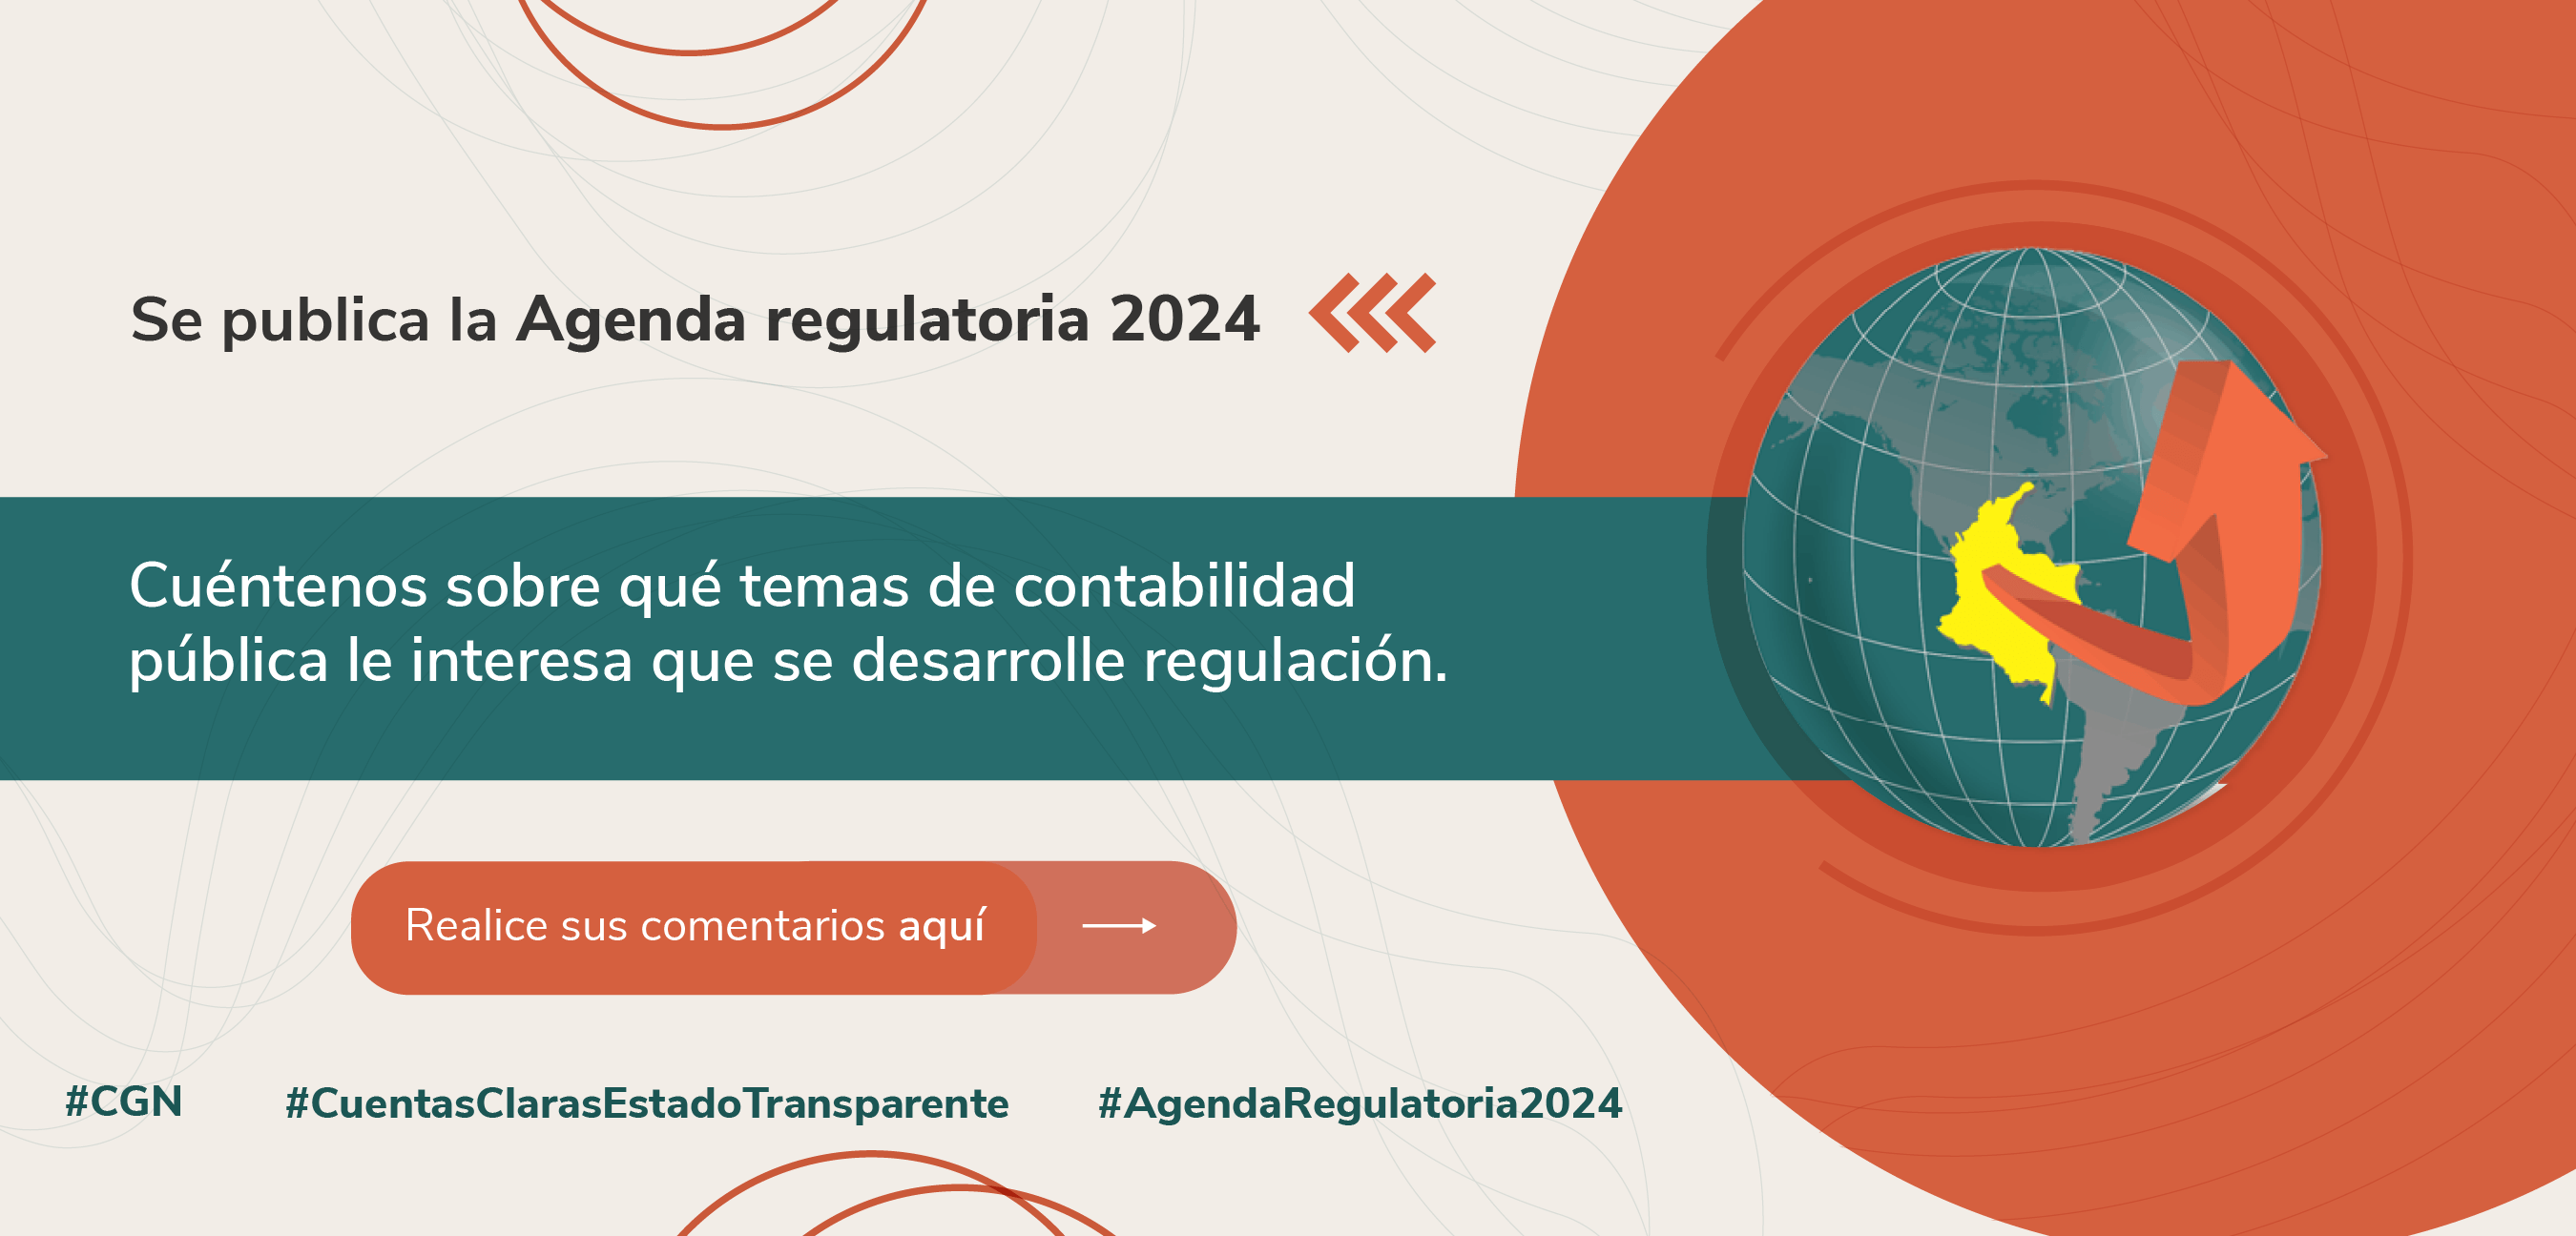 Agenda regulatoria 2024